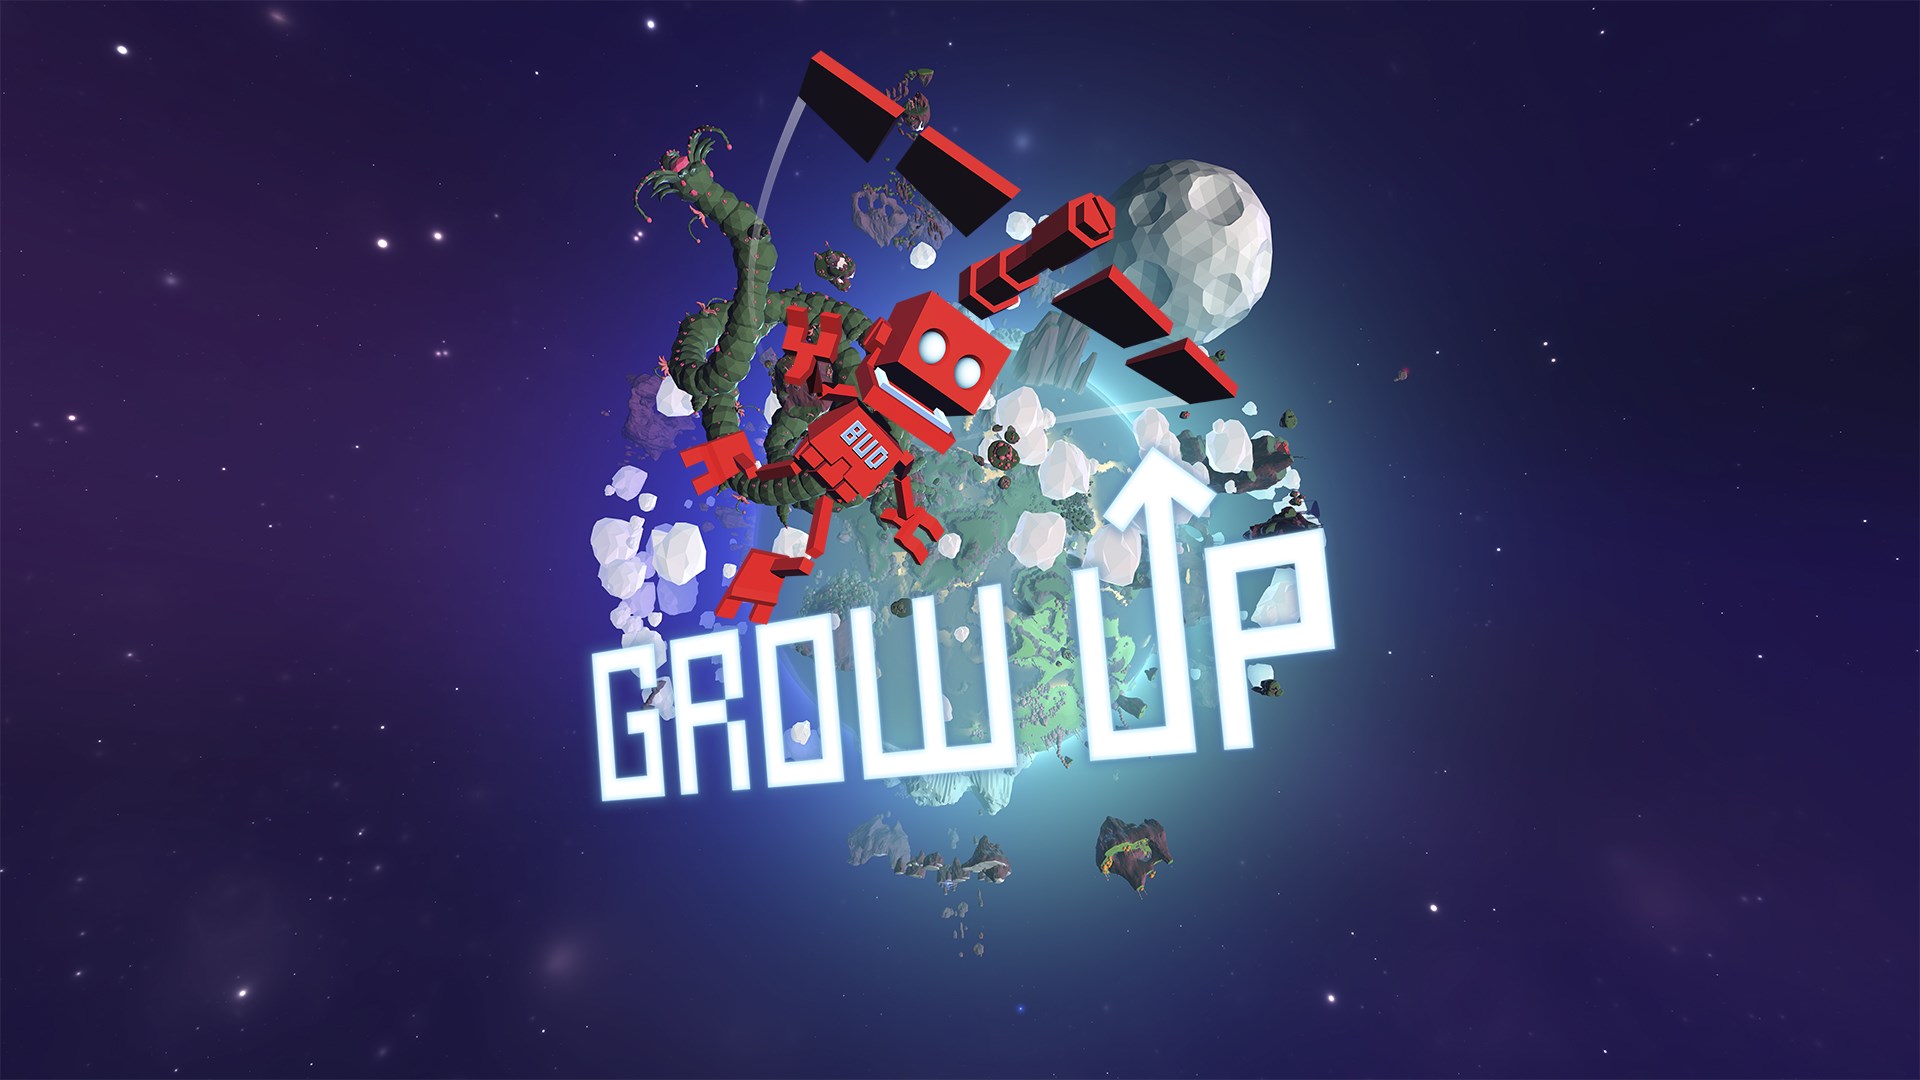 Growing Up Download - GameFabrique